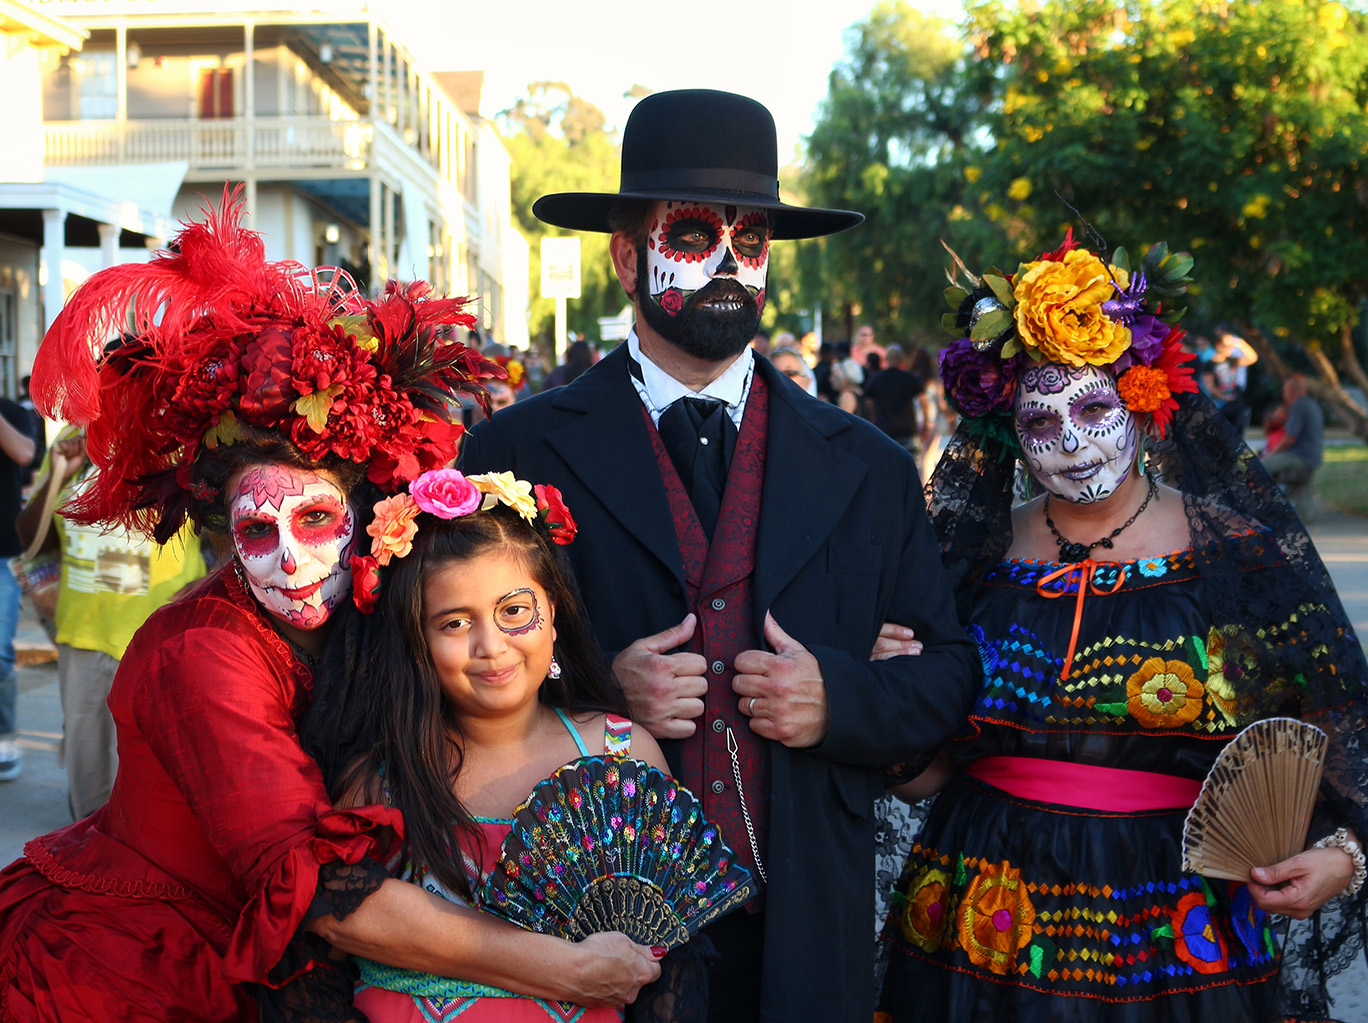 Old Town San Diego's Dia de los Muertos